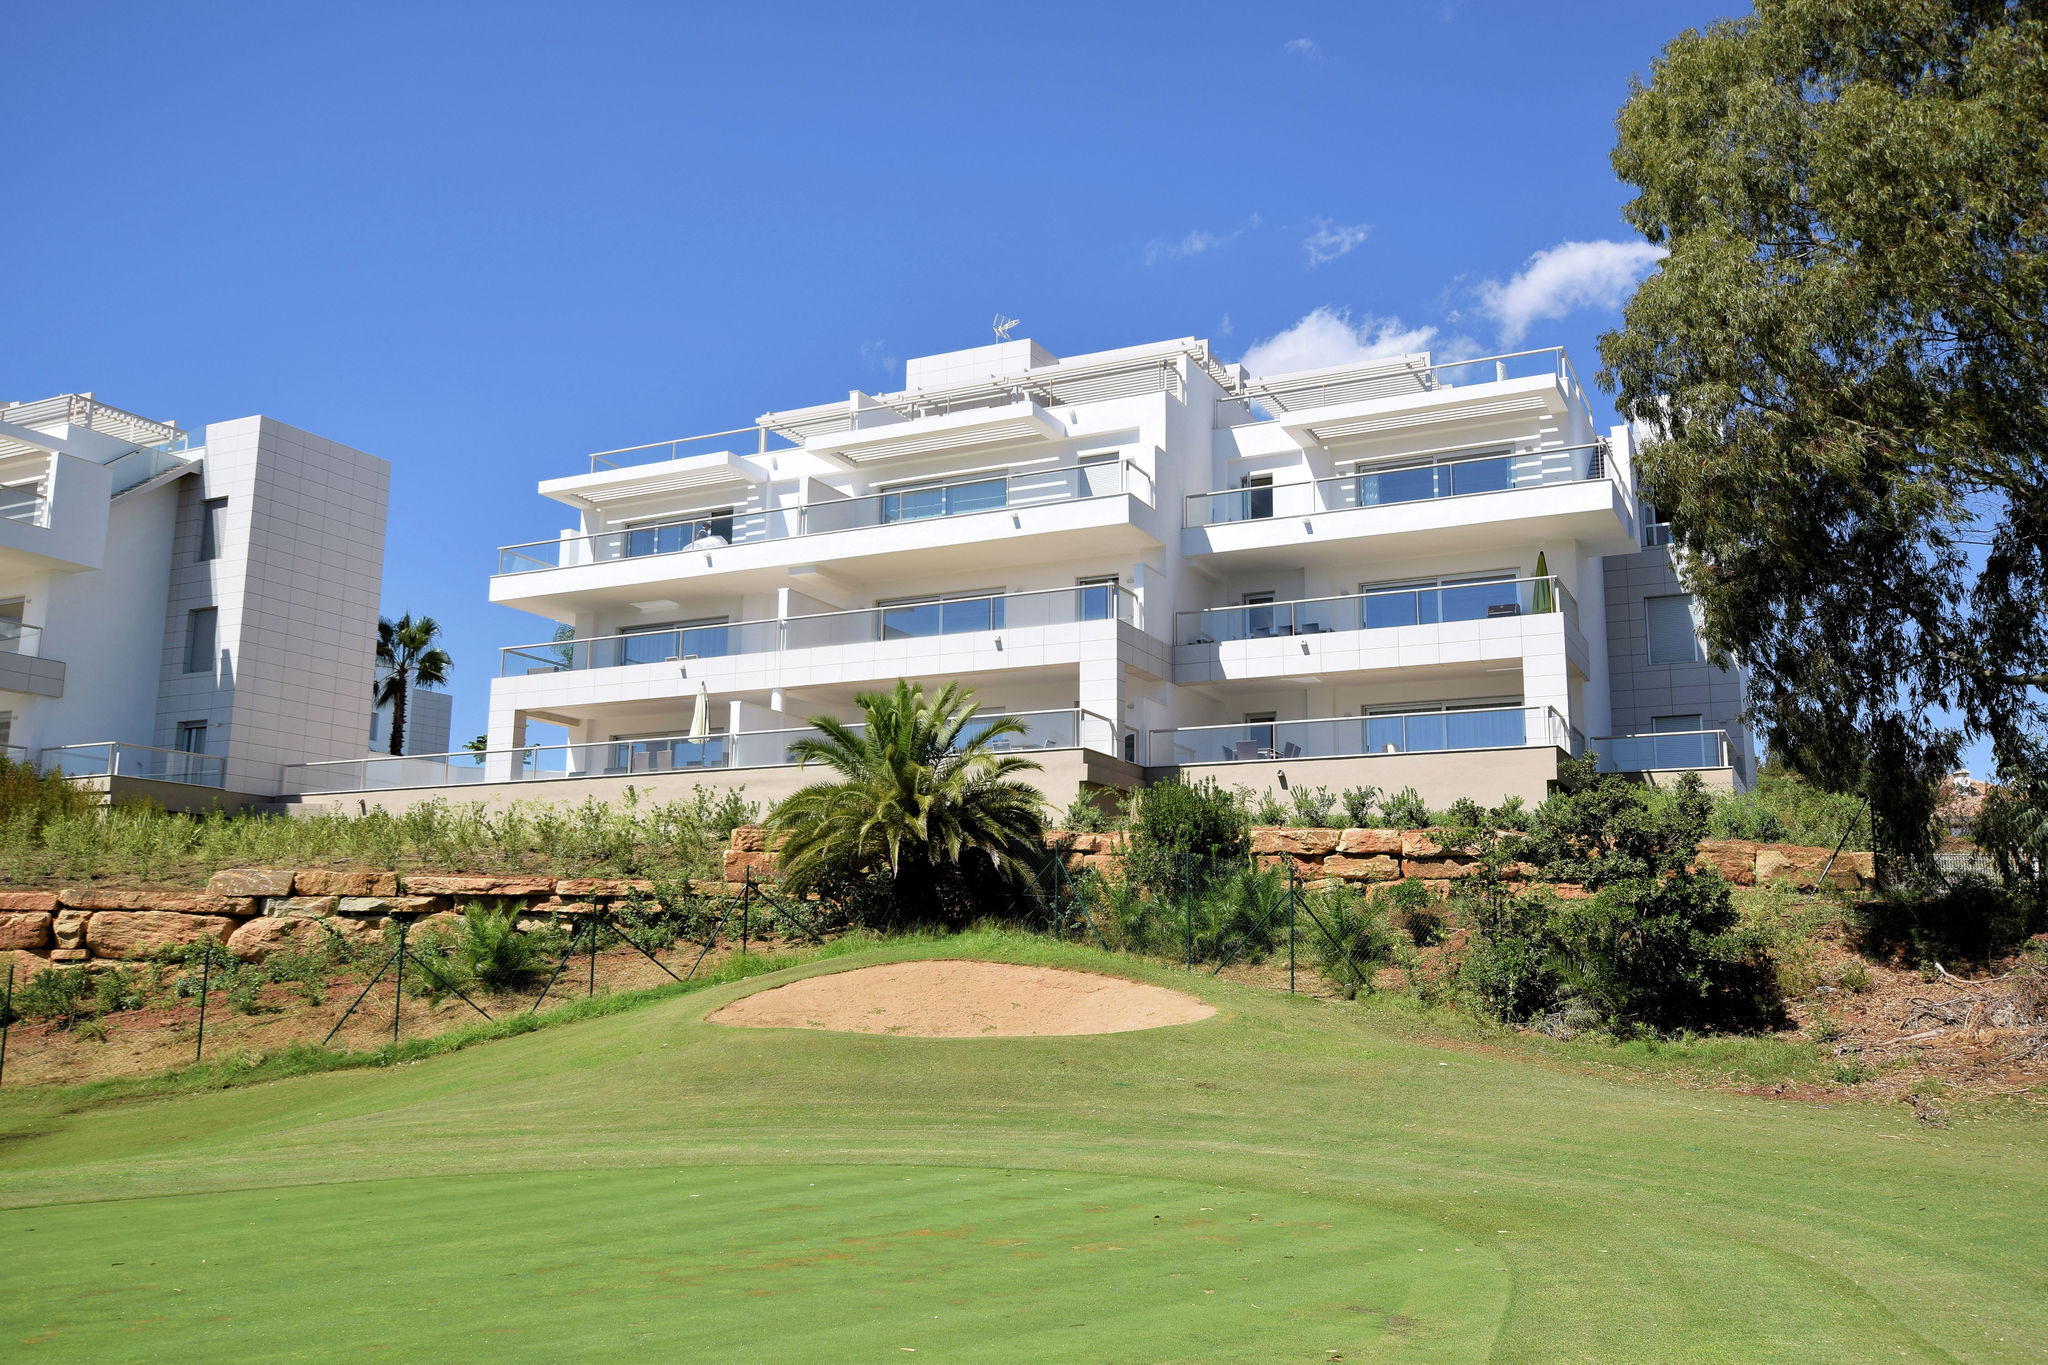 Nieuw luxe appartement in La Cala Golf Resort in de buurt van Mijas tussen Malaga en Marbella